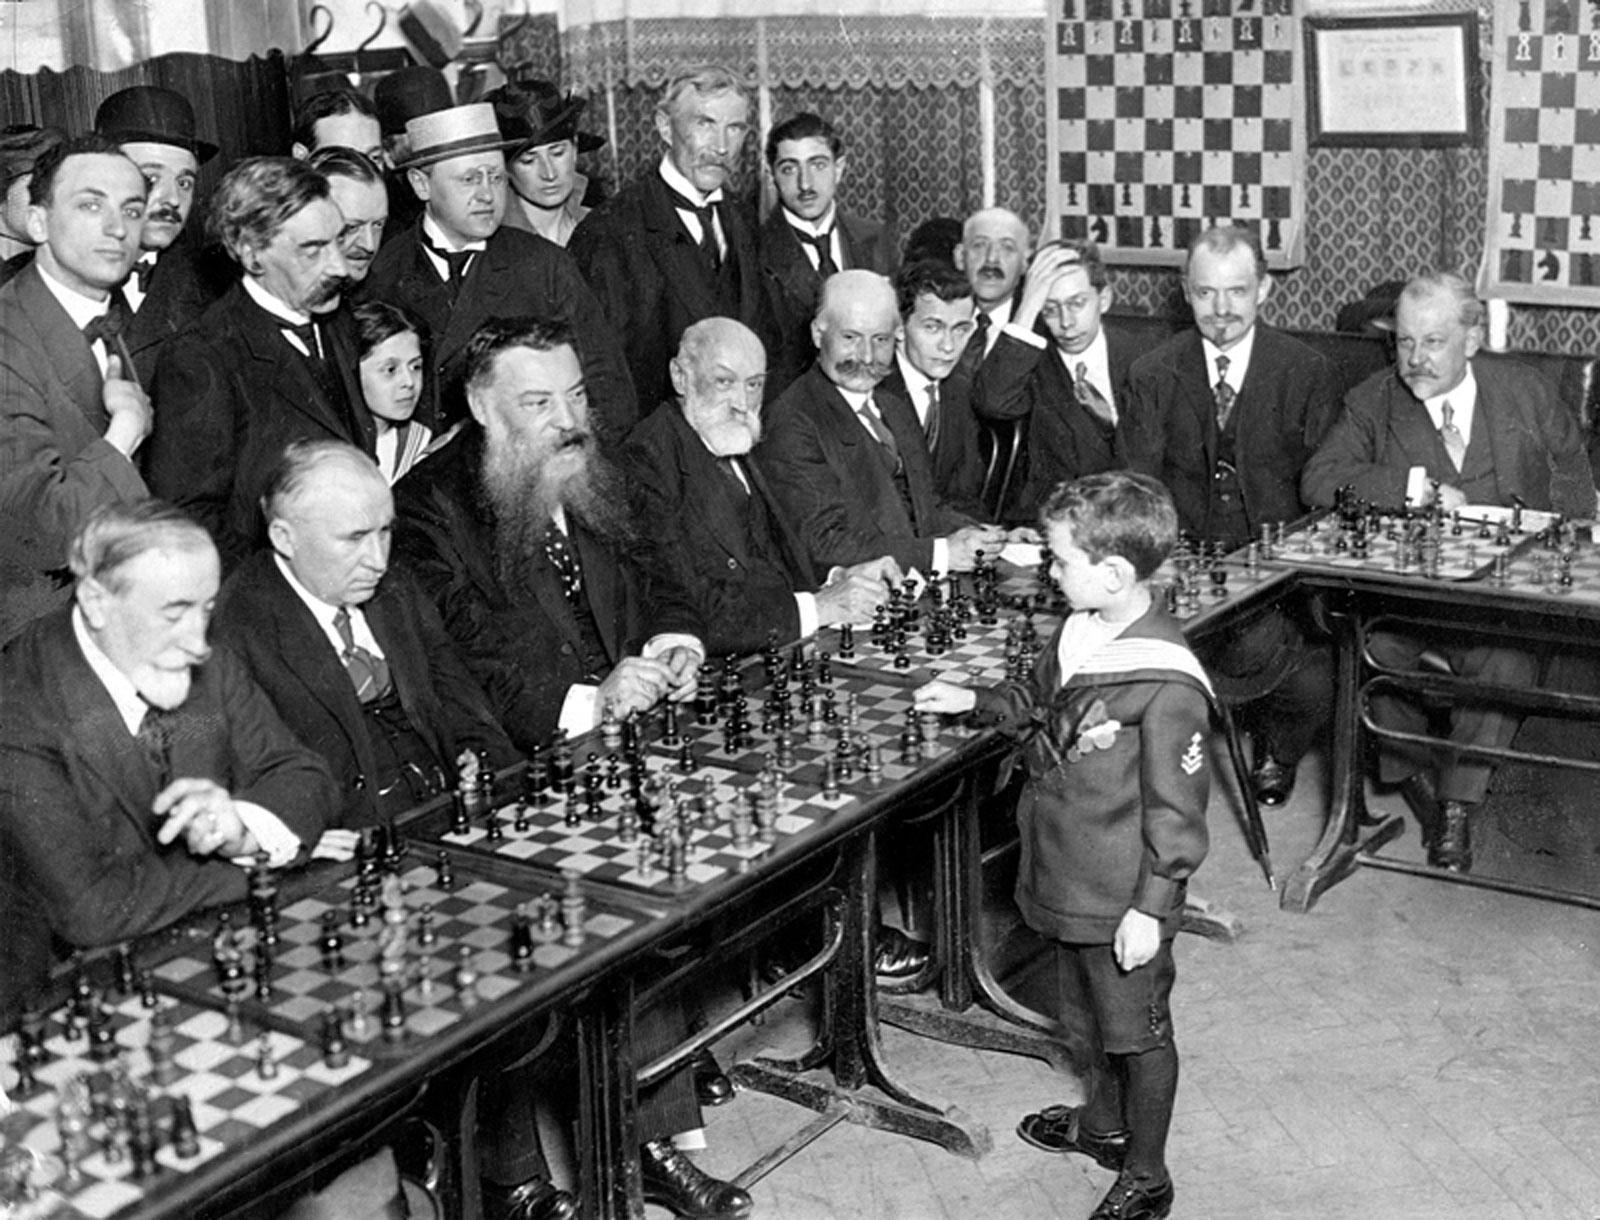 Anatoly Karpov jogando xadrez em uma simultânea em 1975.